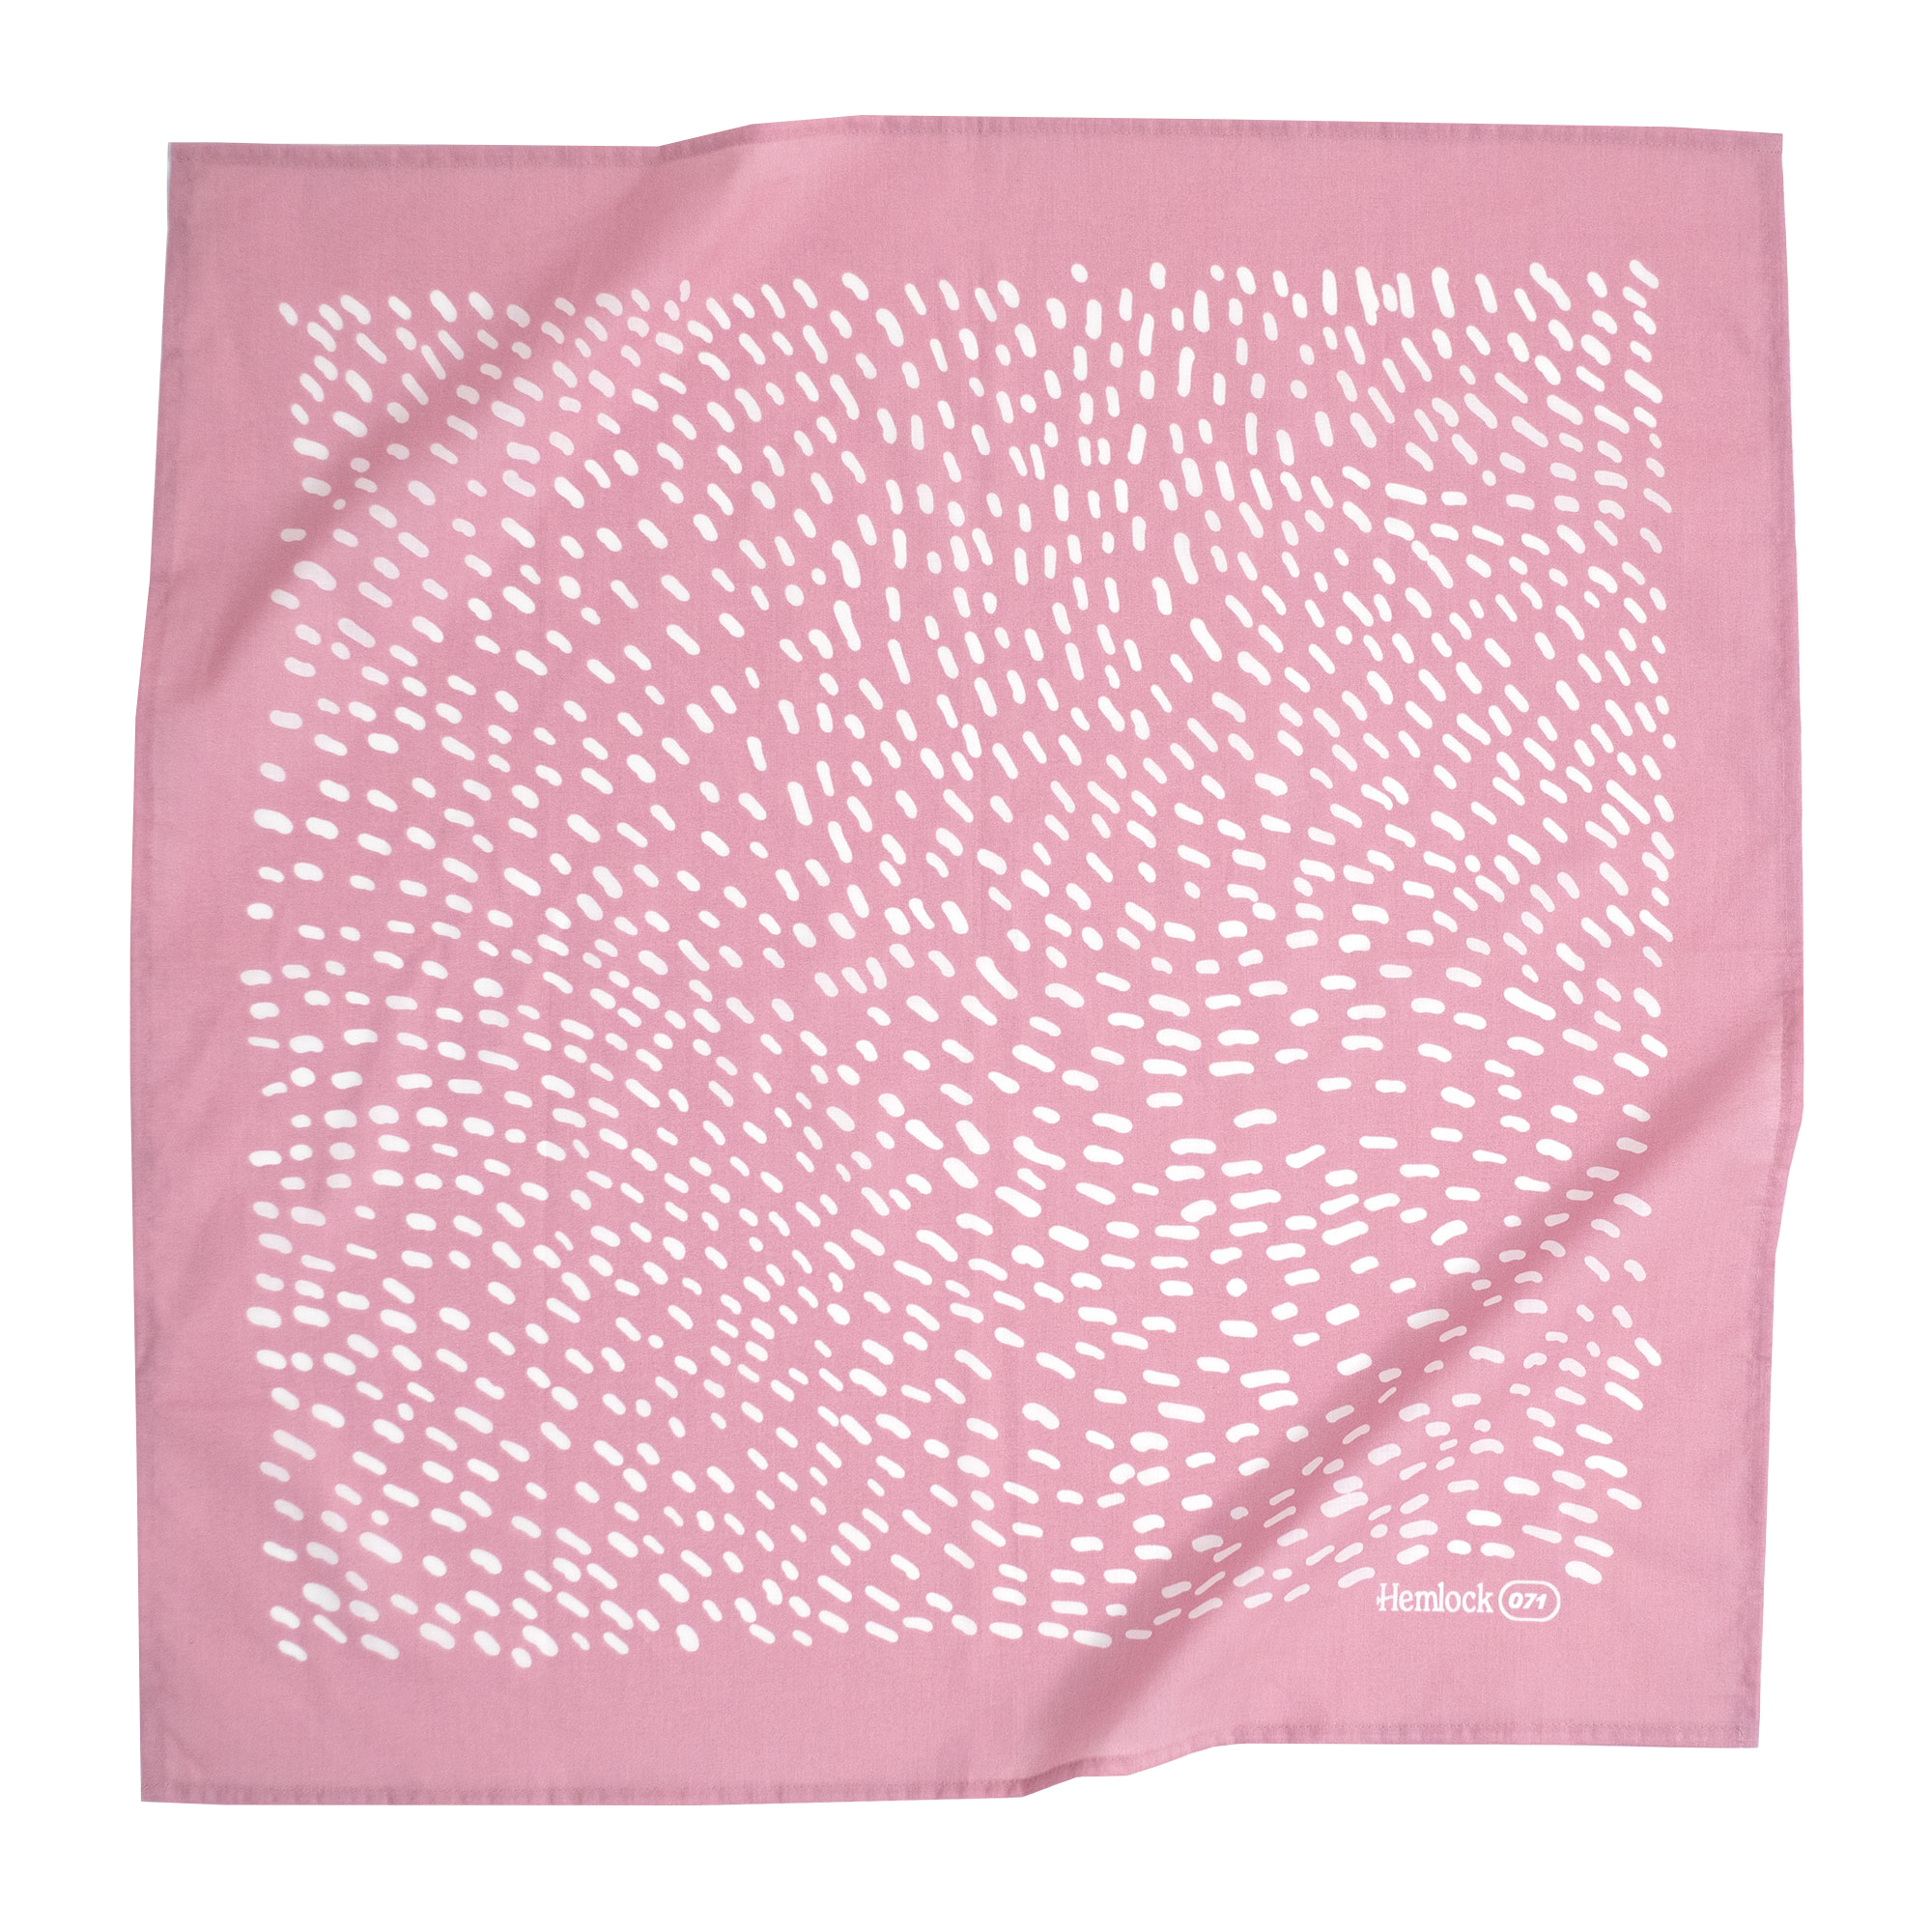 Hemlock Goods No. 071 Alexa Bandana Pink White Abstract Print